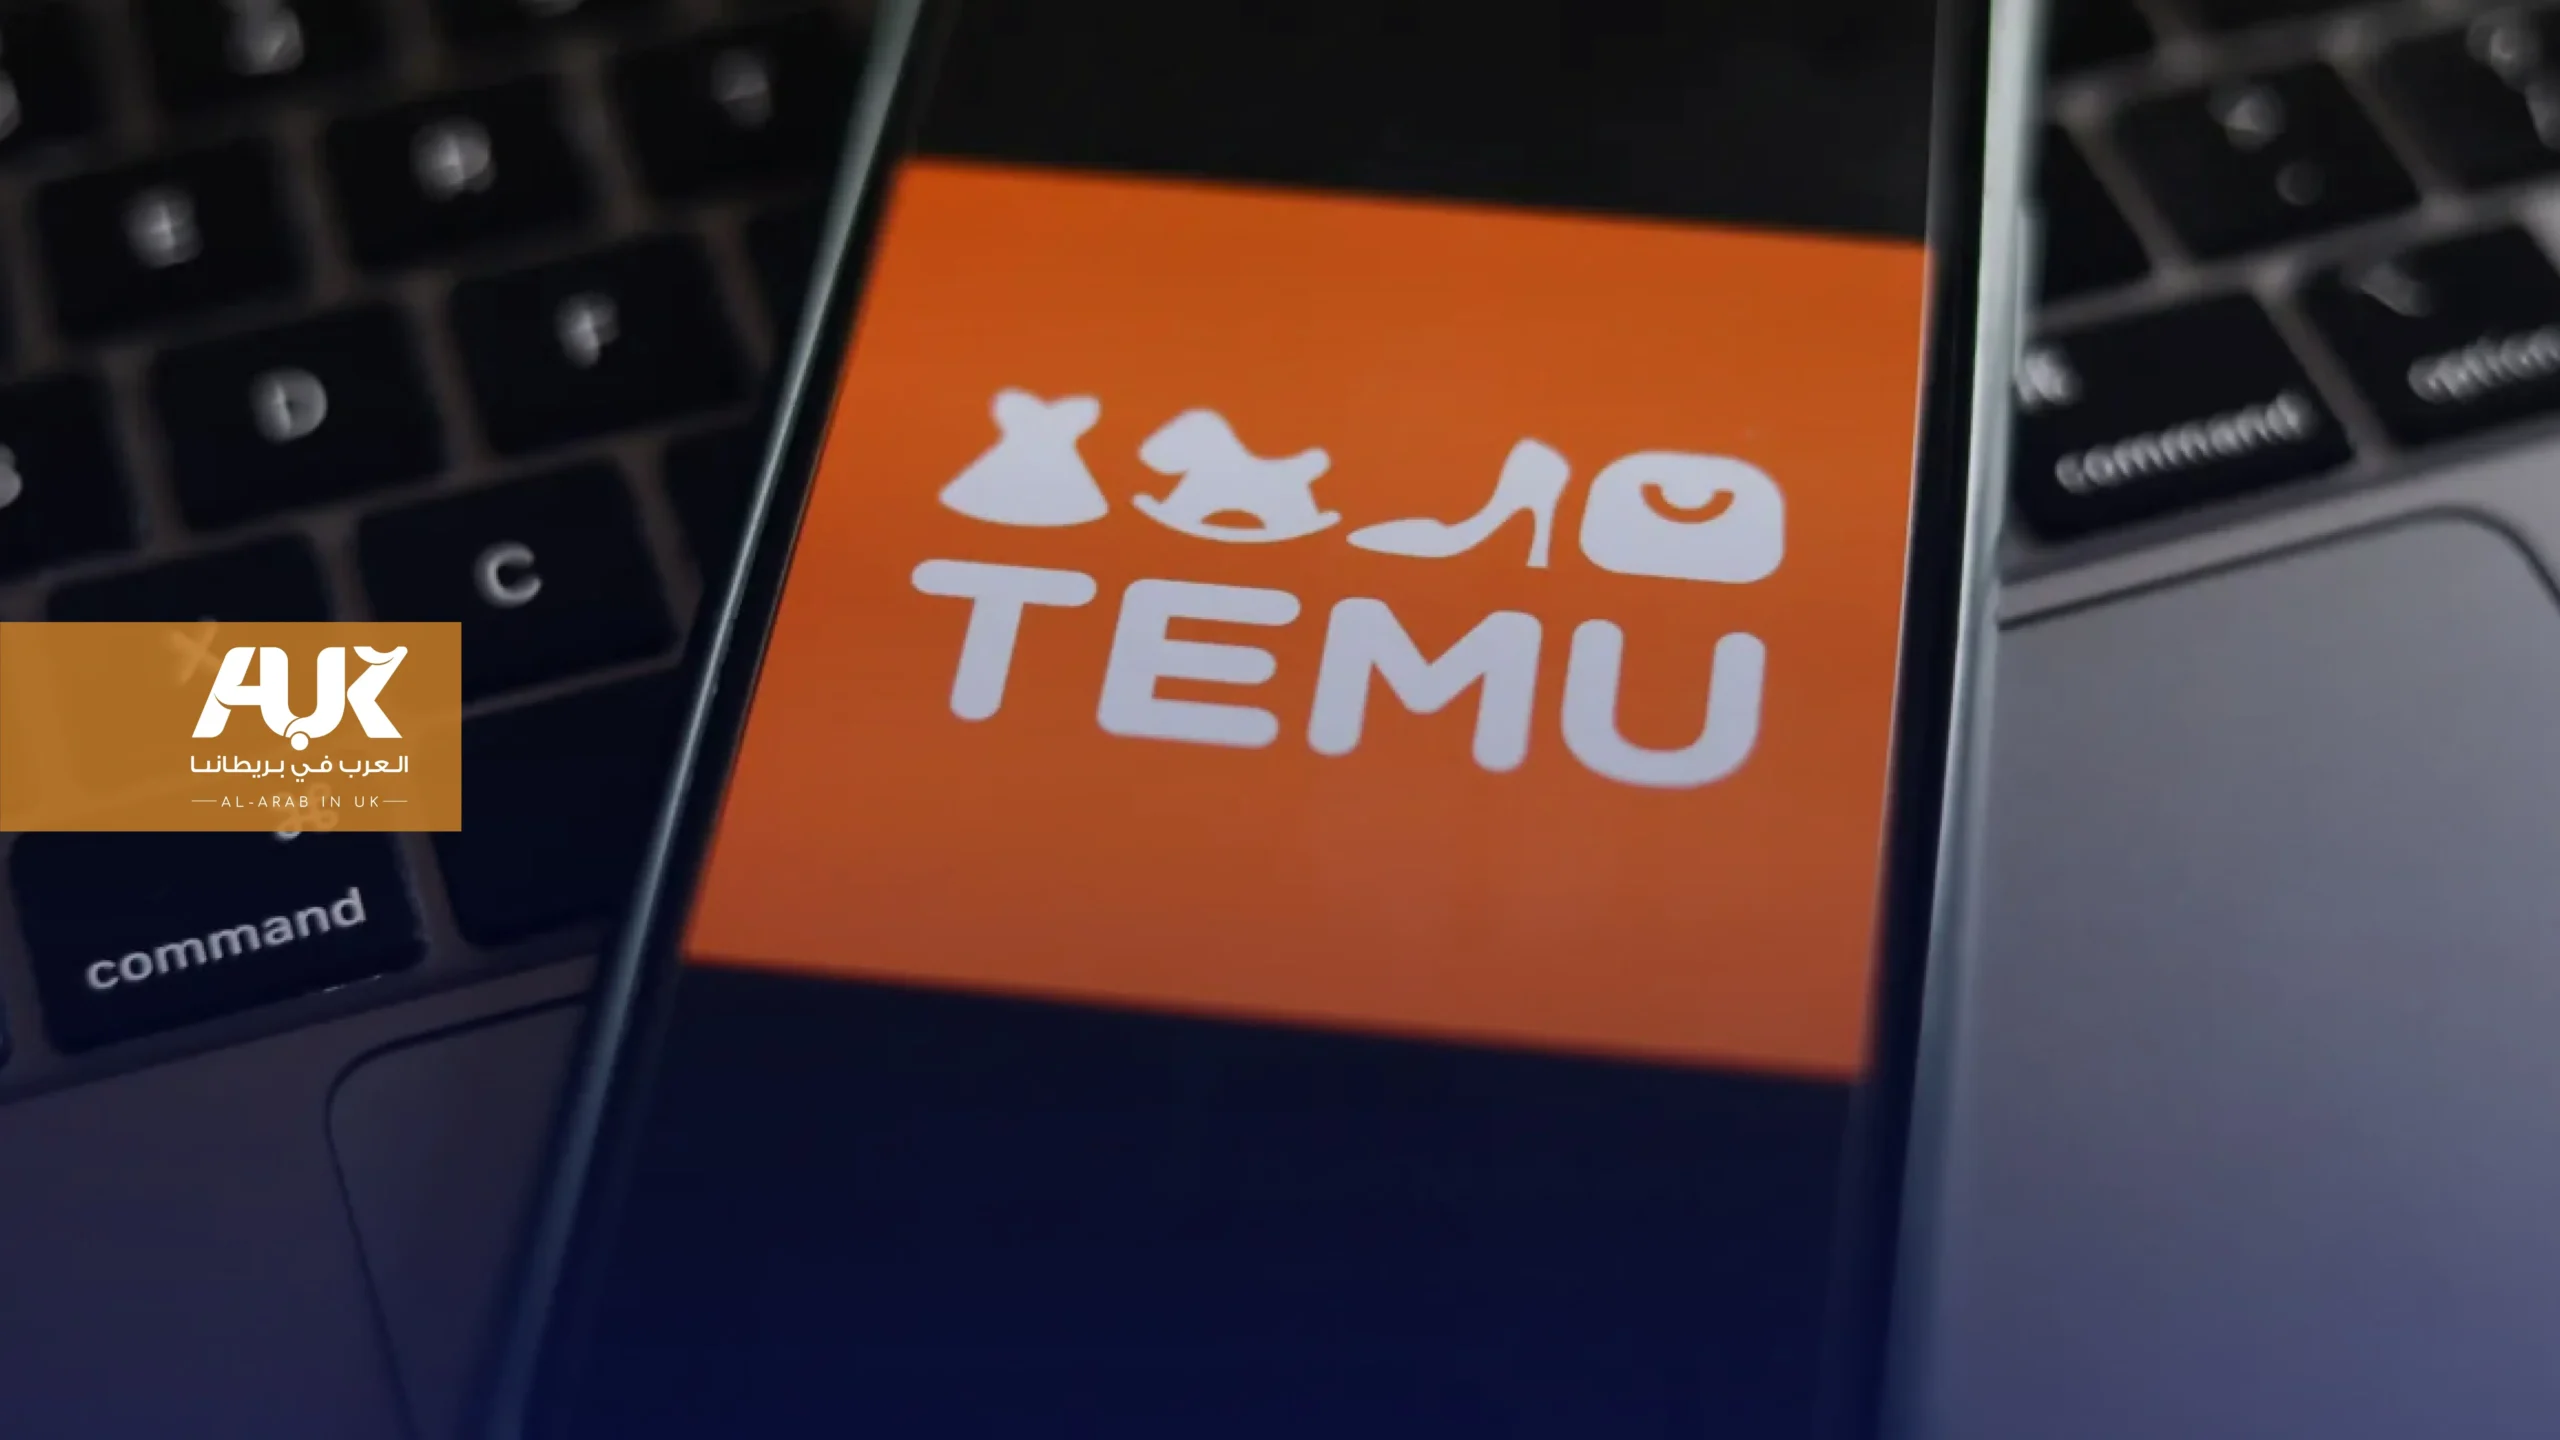 ما درجة الأمان على تطبيق Temu المحمّل على أكثر من 9 ملايين هاتف بريطاني؟